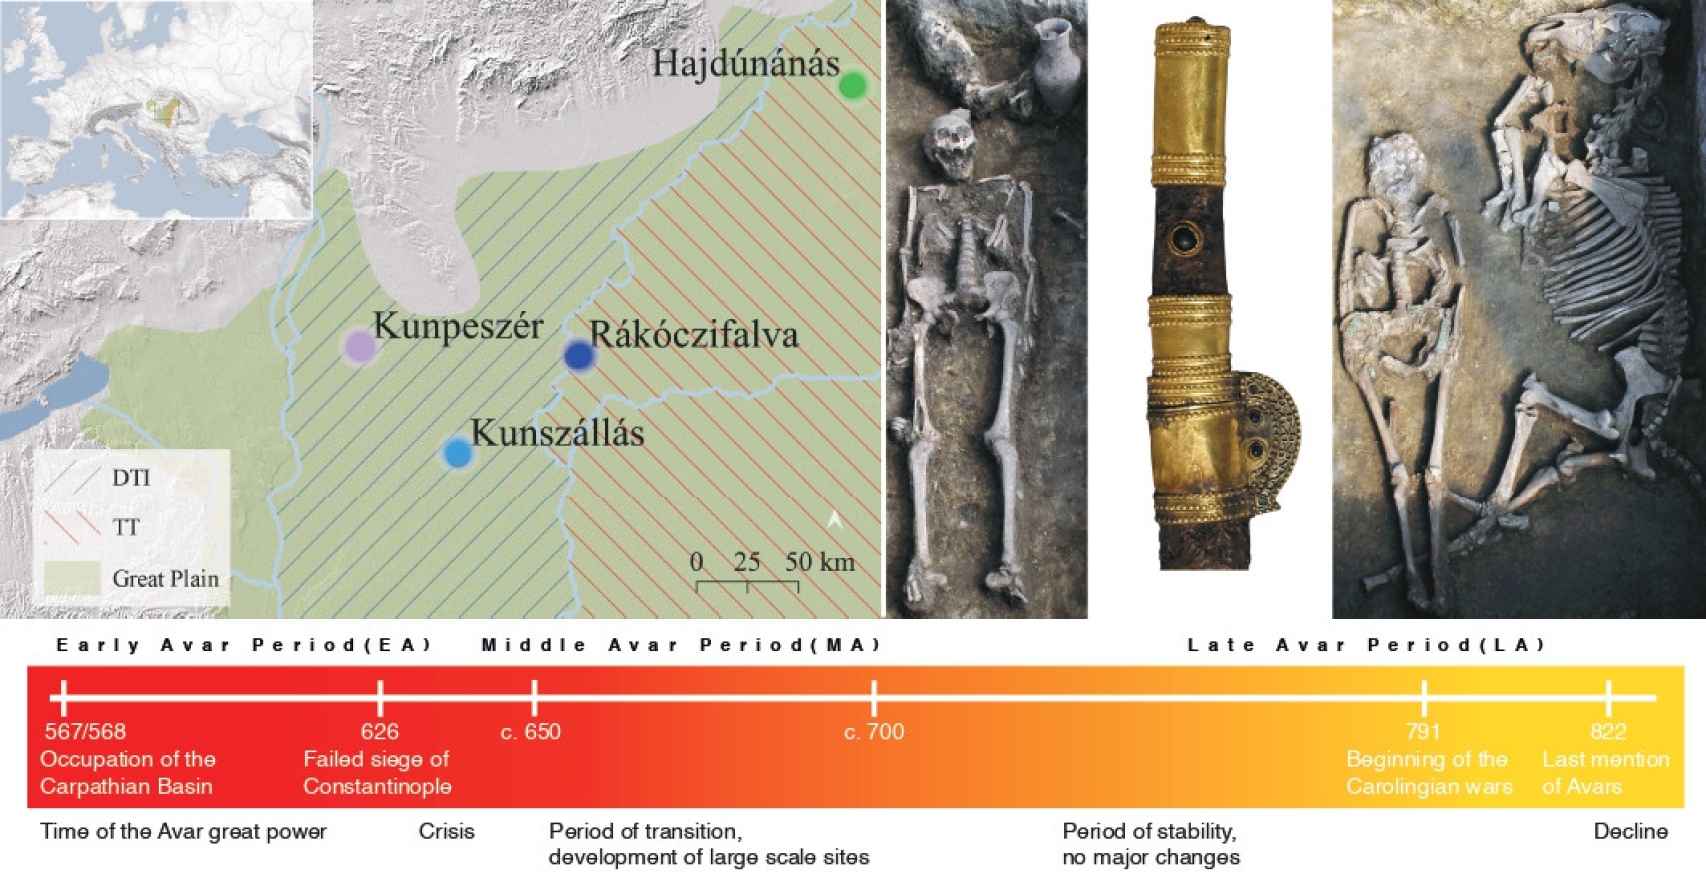 Mapa de la gran llanura húngara con la localización de las cuatro necrópolis estudiadas. A la derecha, elementos que caracterizan los enterramientos de estas poblaciones, como las espadas y los restos de animales.